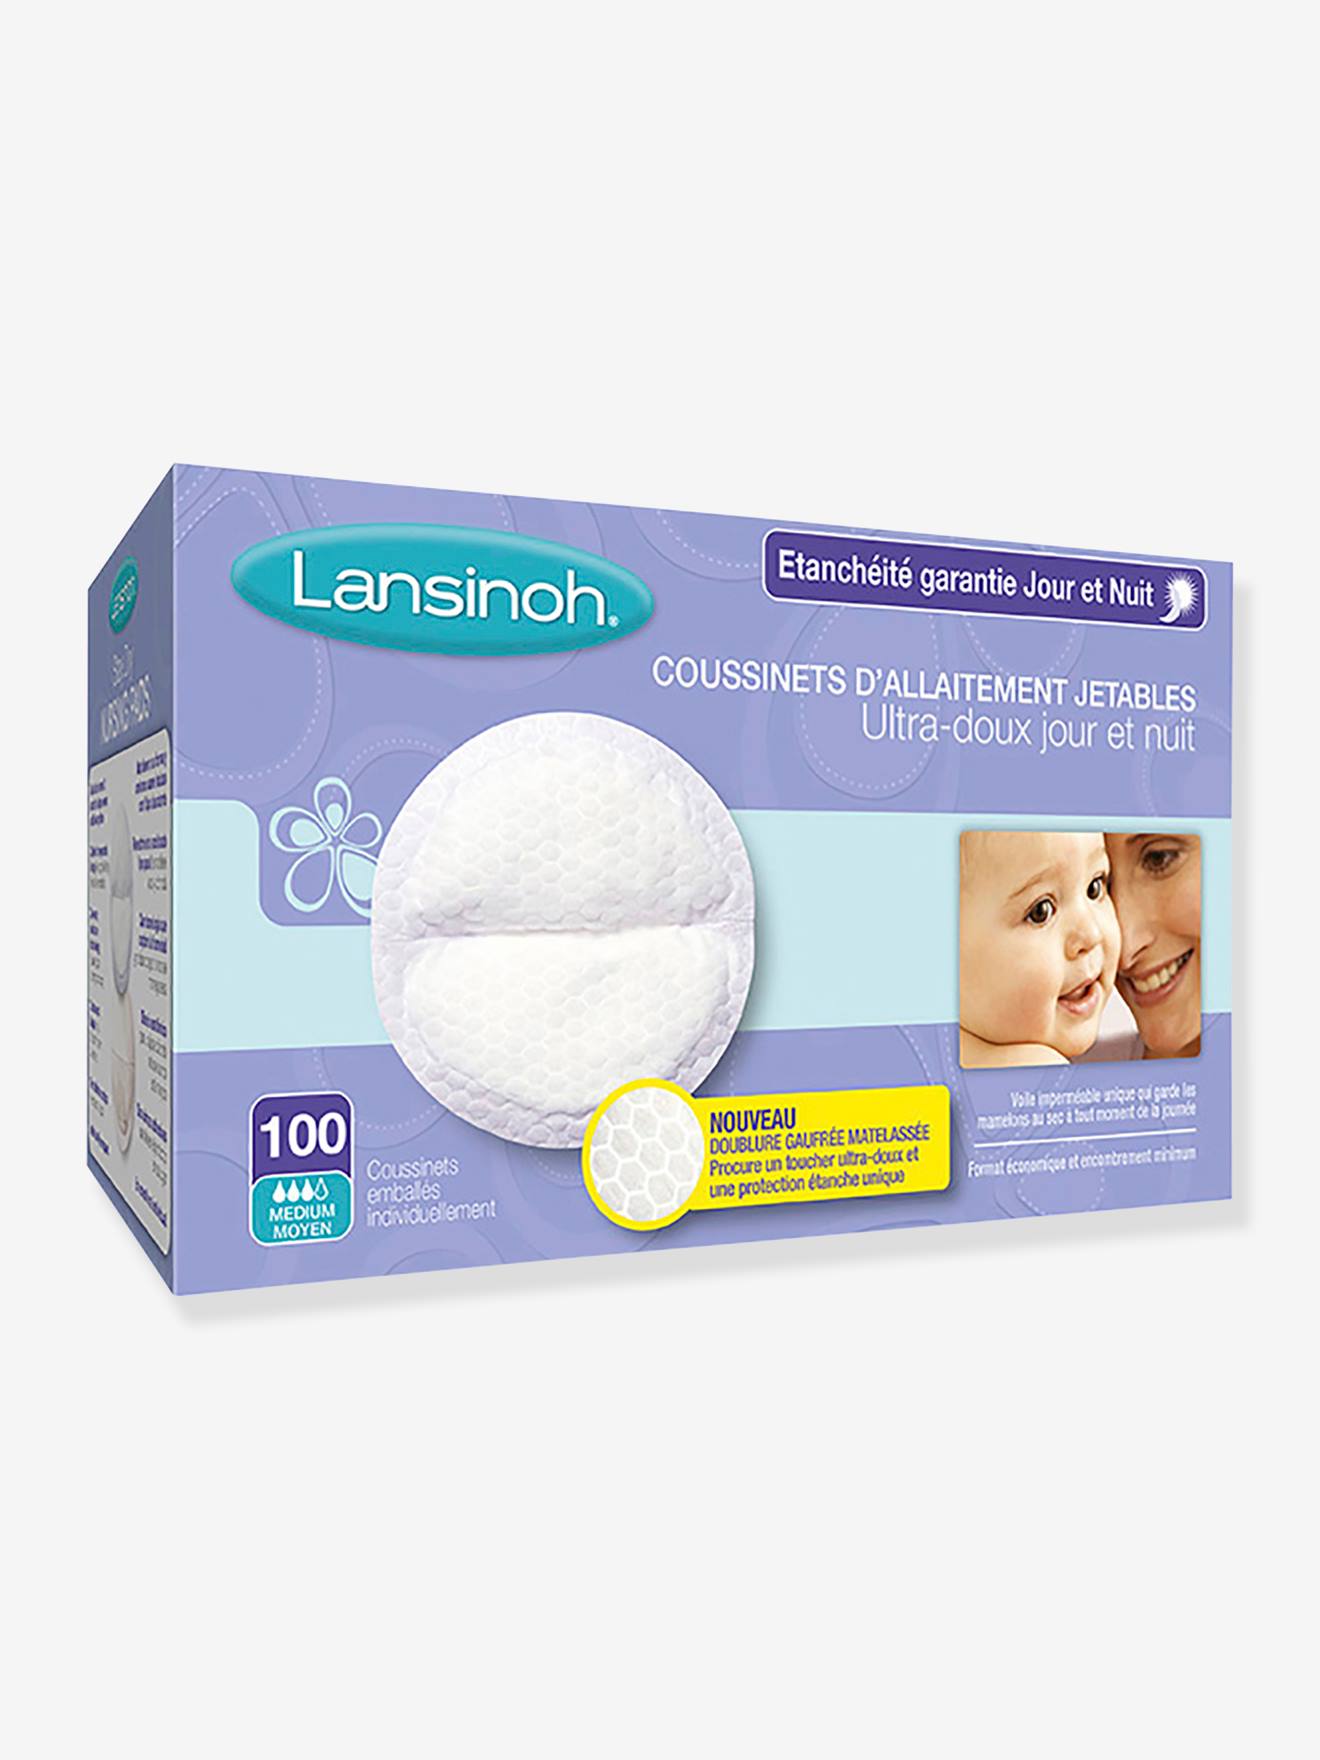 Lansinoh - Coussinets d'allaitement lavables couleurs - 100